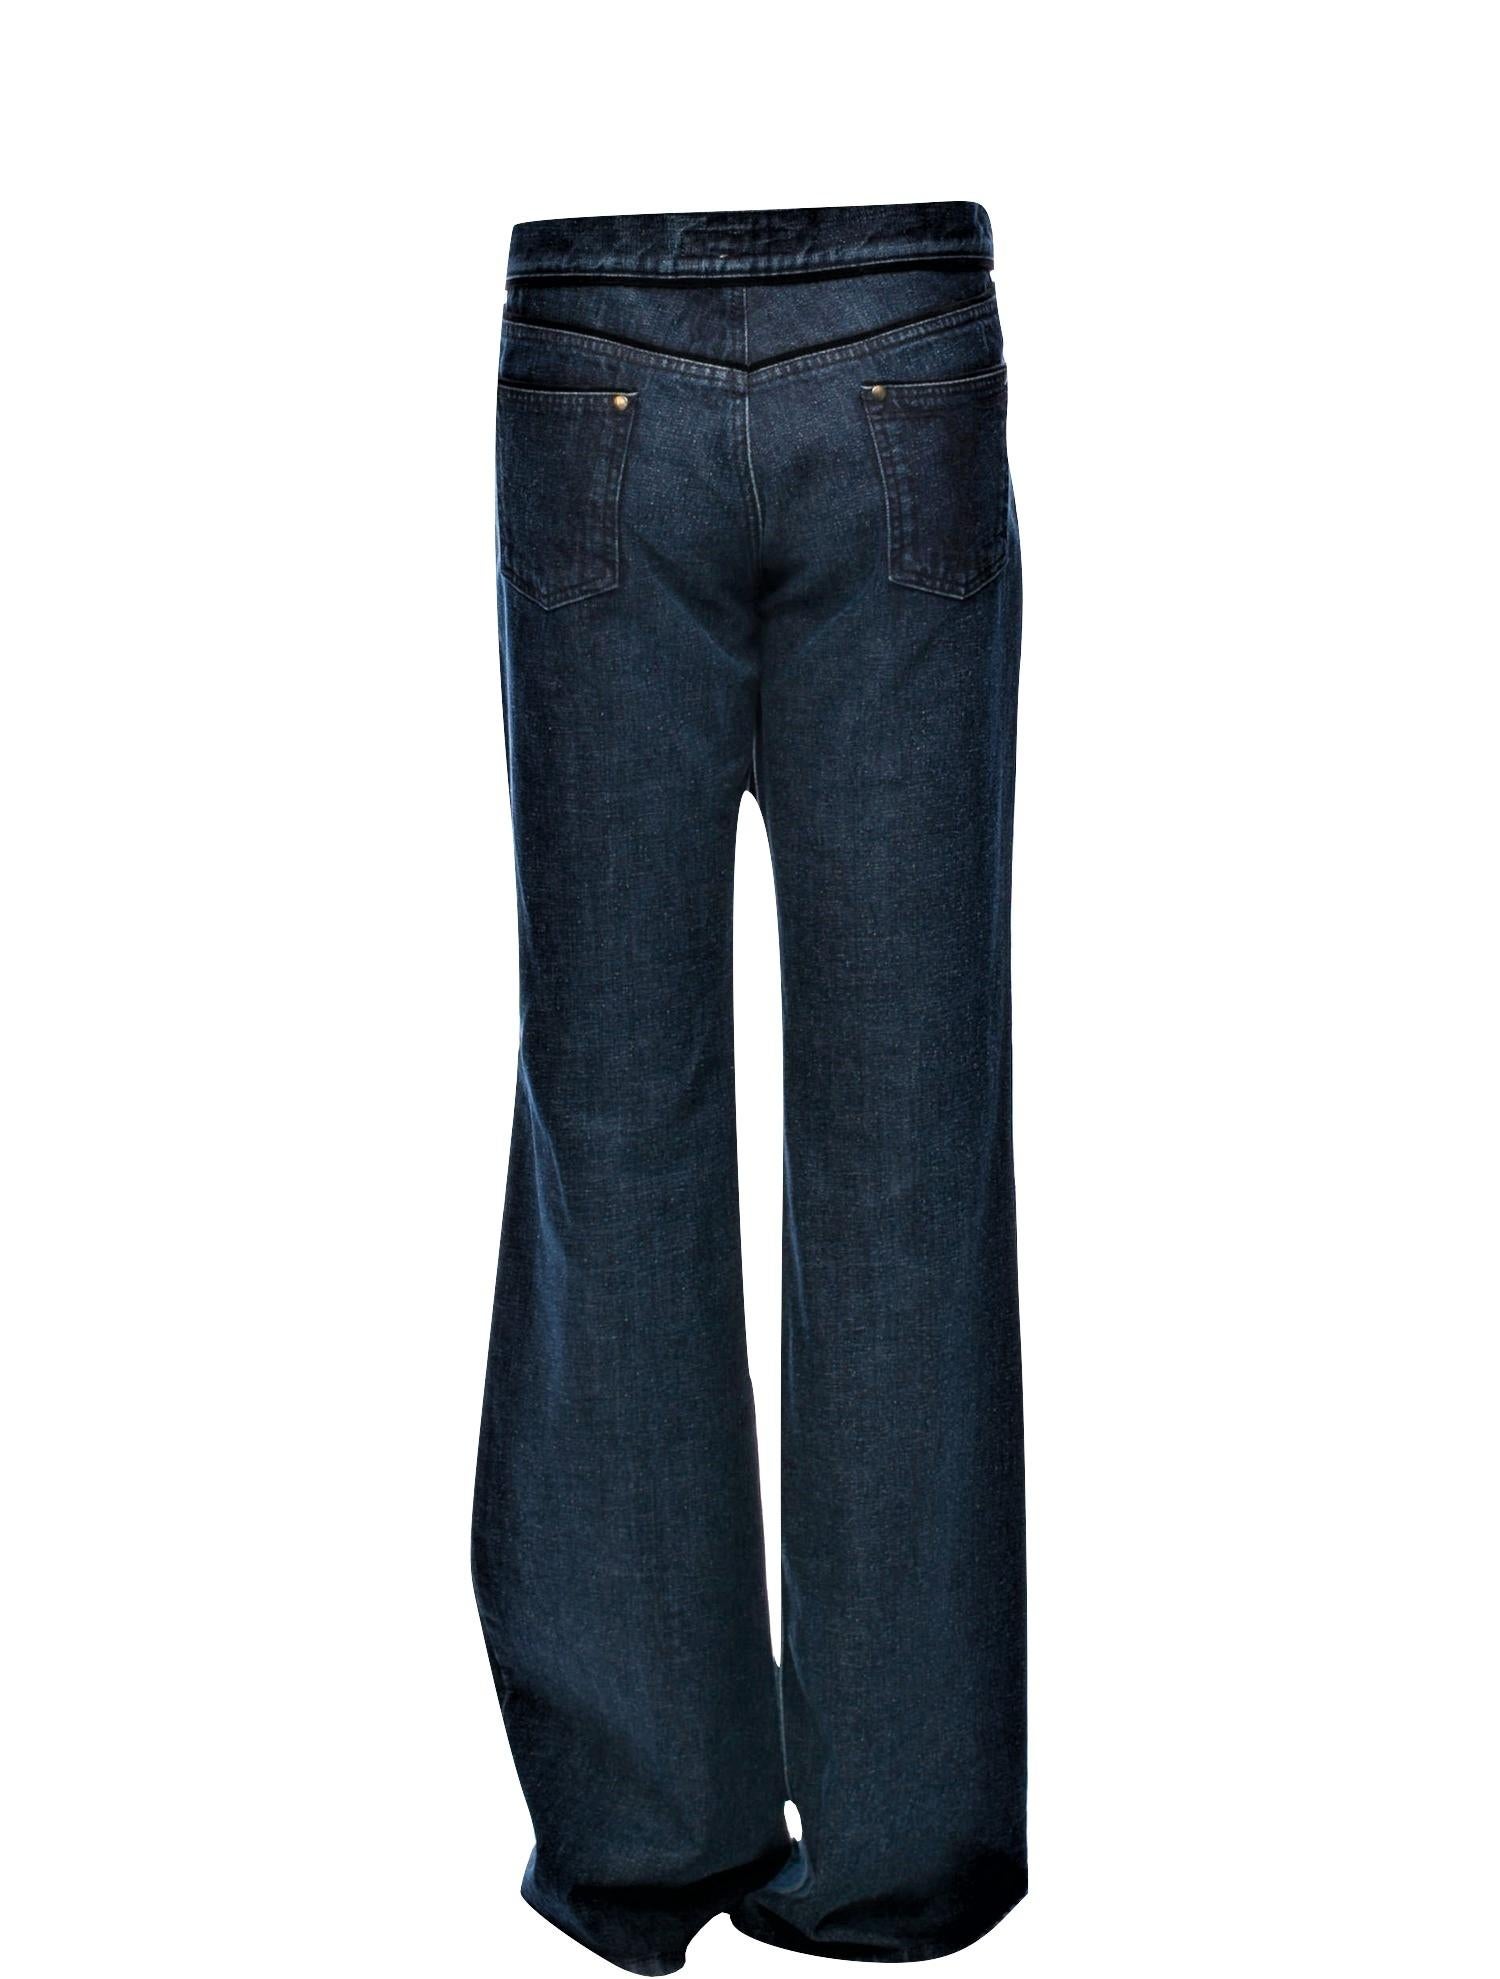 New Yves Saint Laurent YSL S/S 2005 Bell Bottom Jeans Pants Sz 42 $795 2